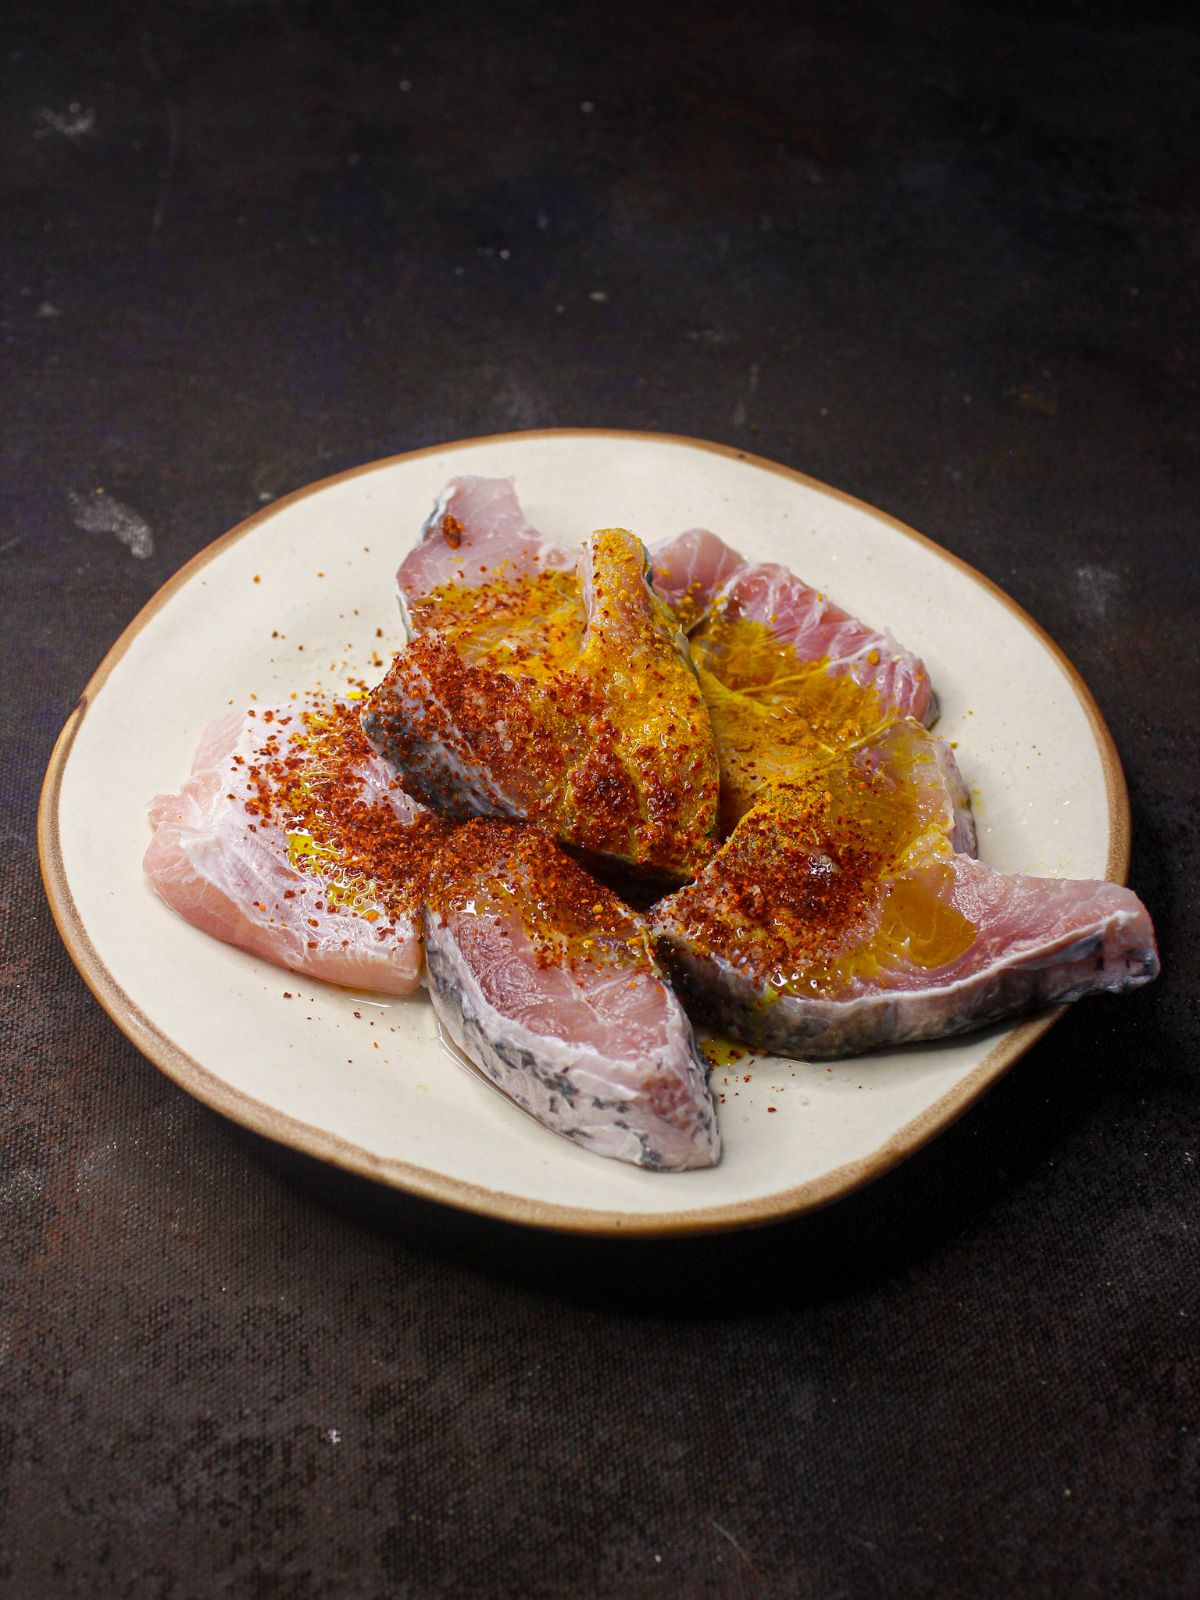 raw fish in seasonings on white plate